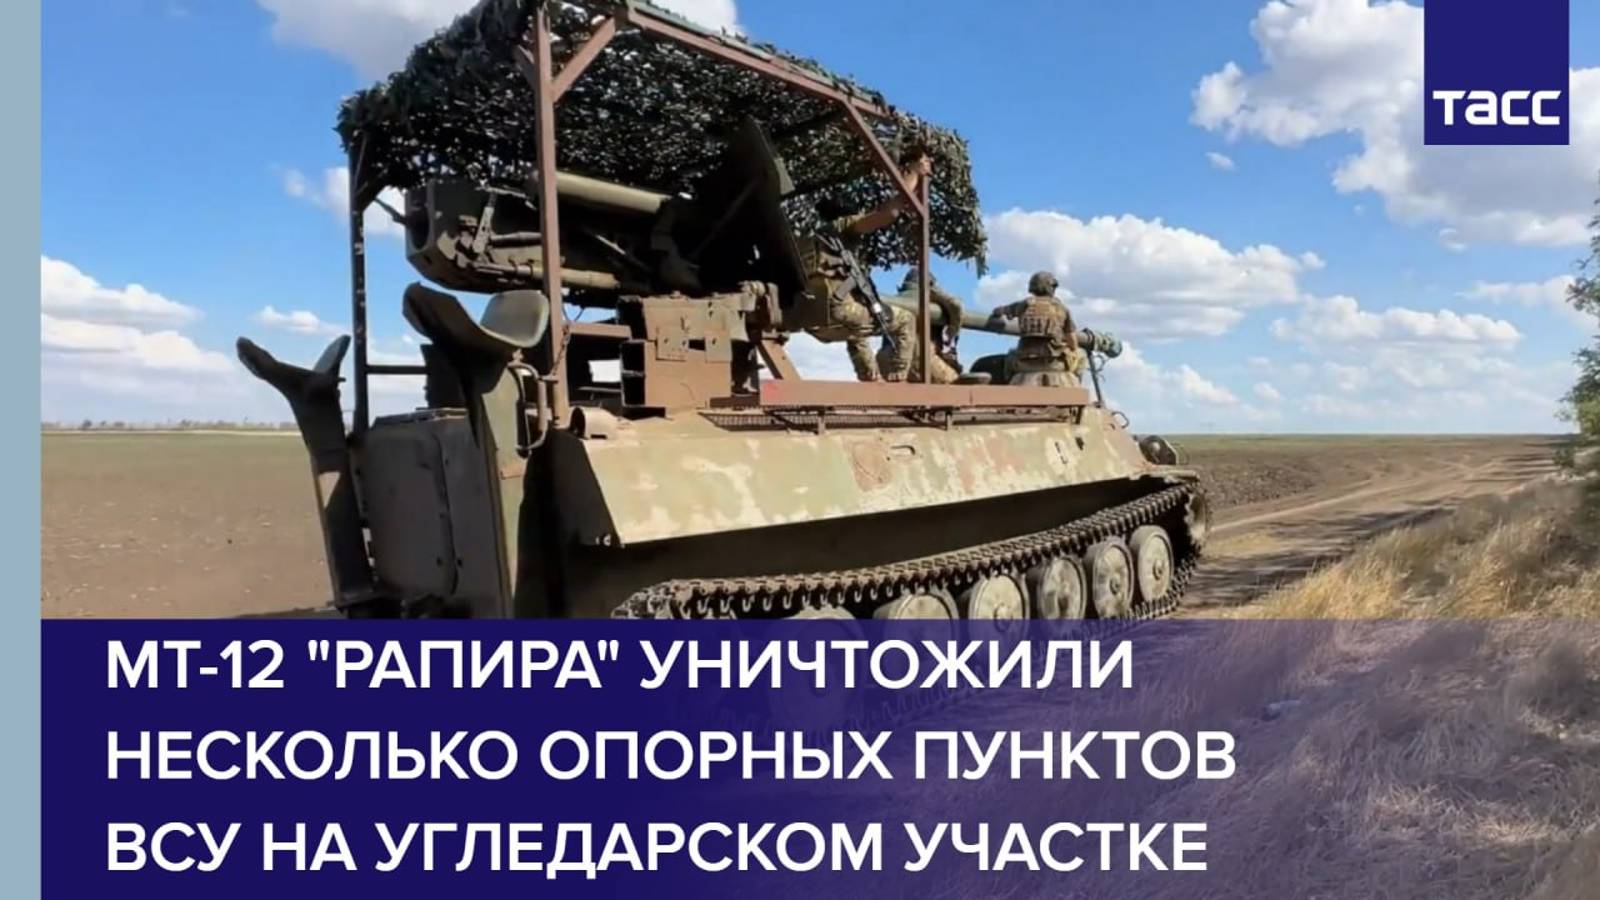 МТ-12 "Рапира" уничтожили несколько опорных пунктов ВСУ на угледарском участке